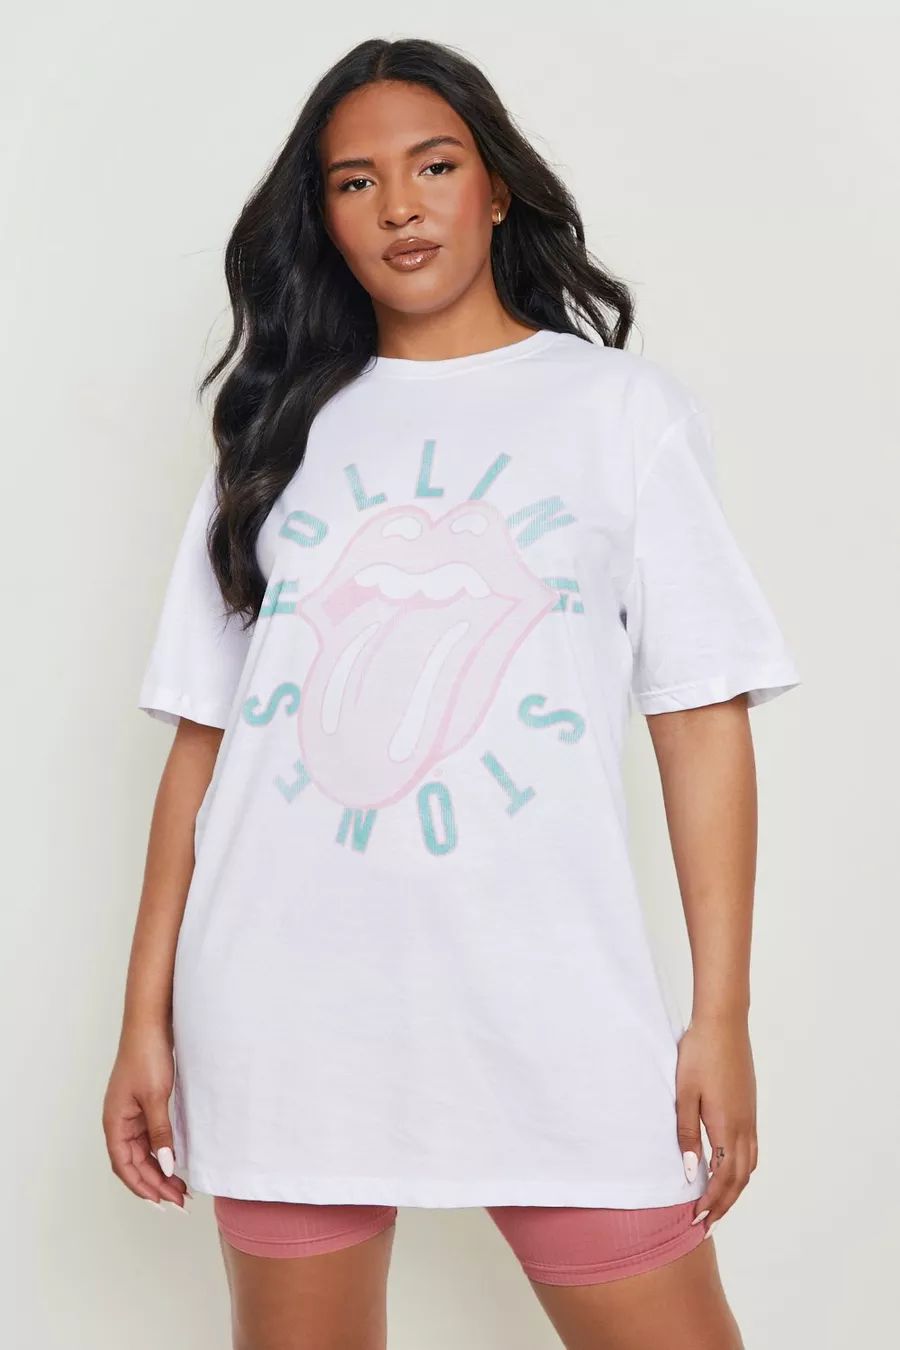 Plus Pastel Rolling Stones Licensed T-shirt | Boohoo.com (US & CA)